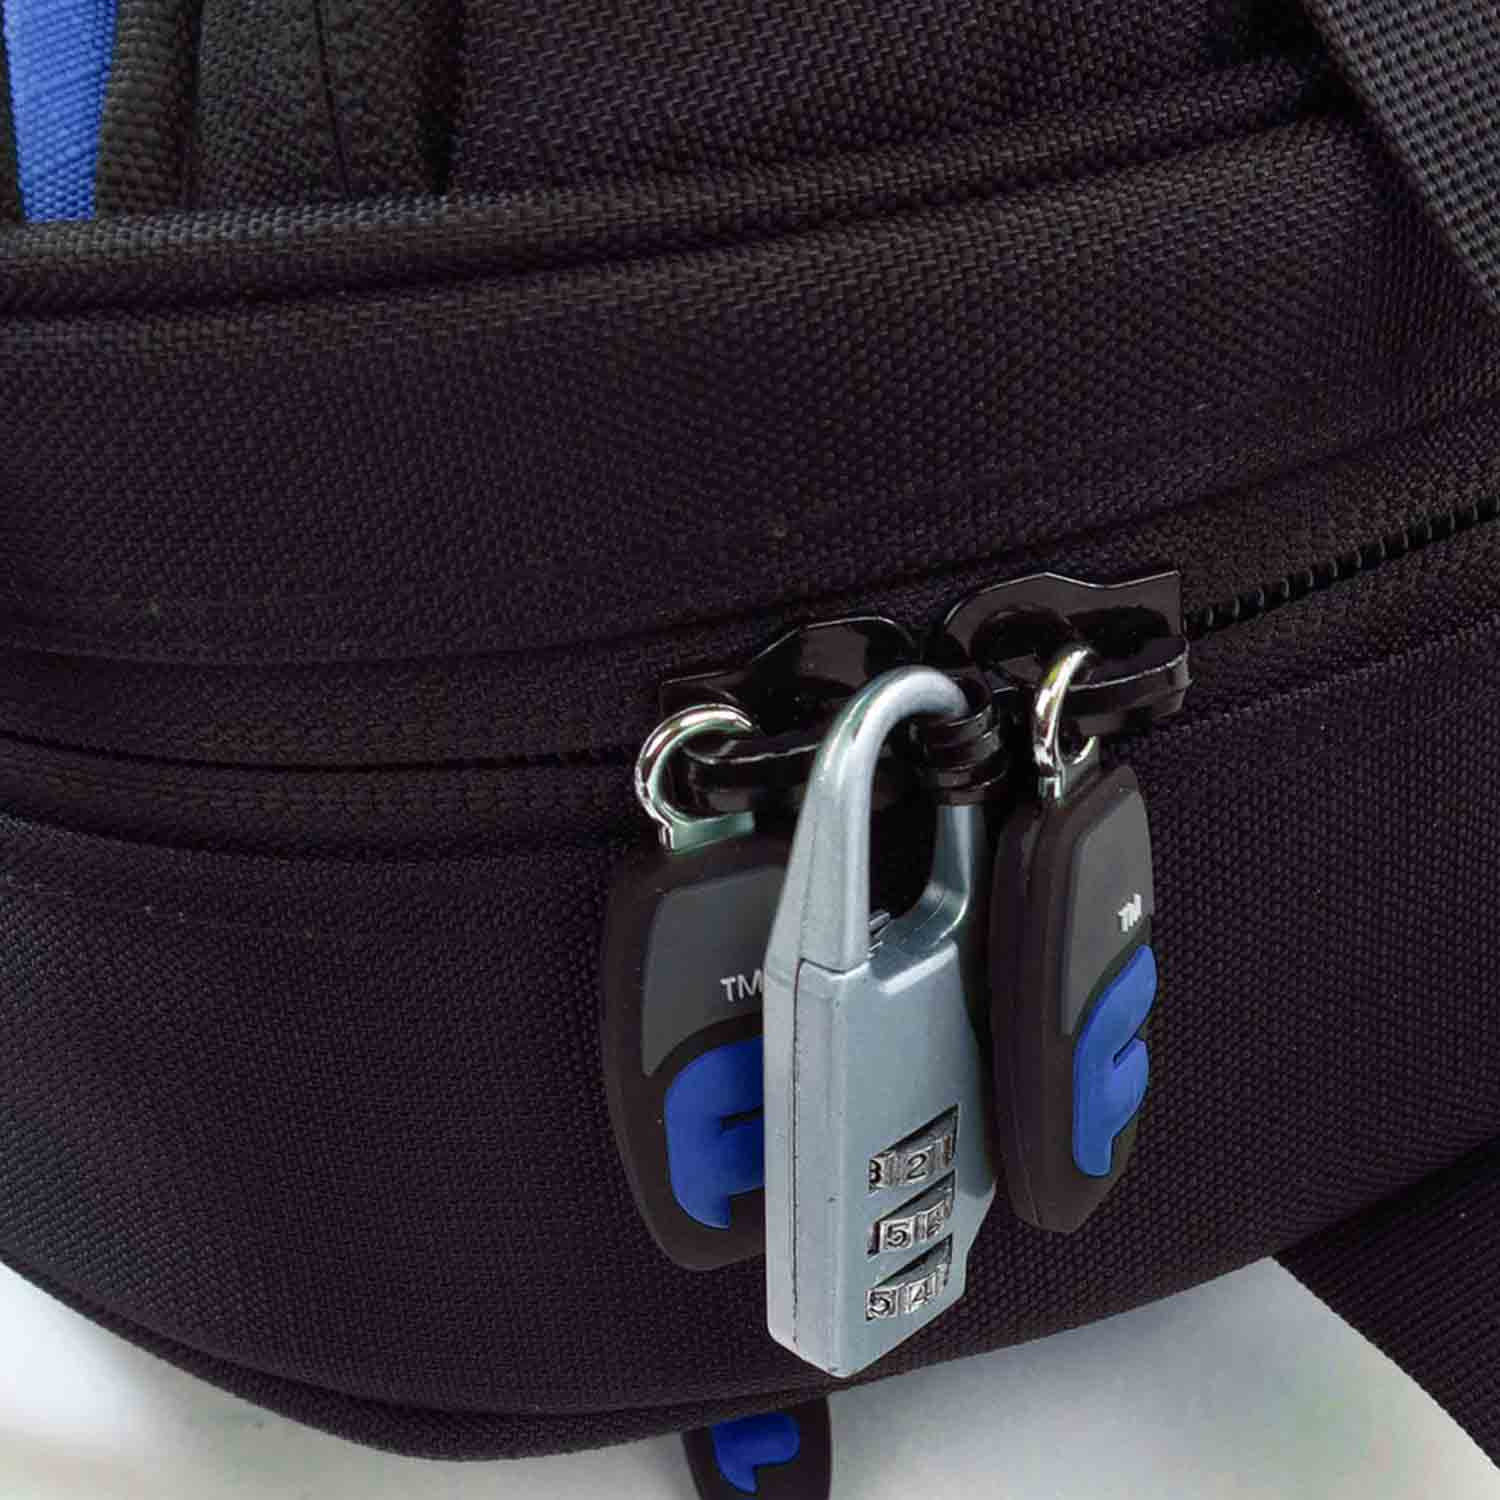 Fusion FB-PB-17-B, Premium Series French Horn Detachable Gig Bag (Black/Blue) - Hollywood DJ